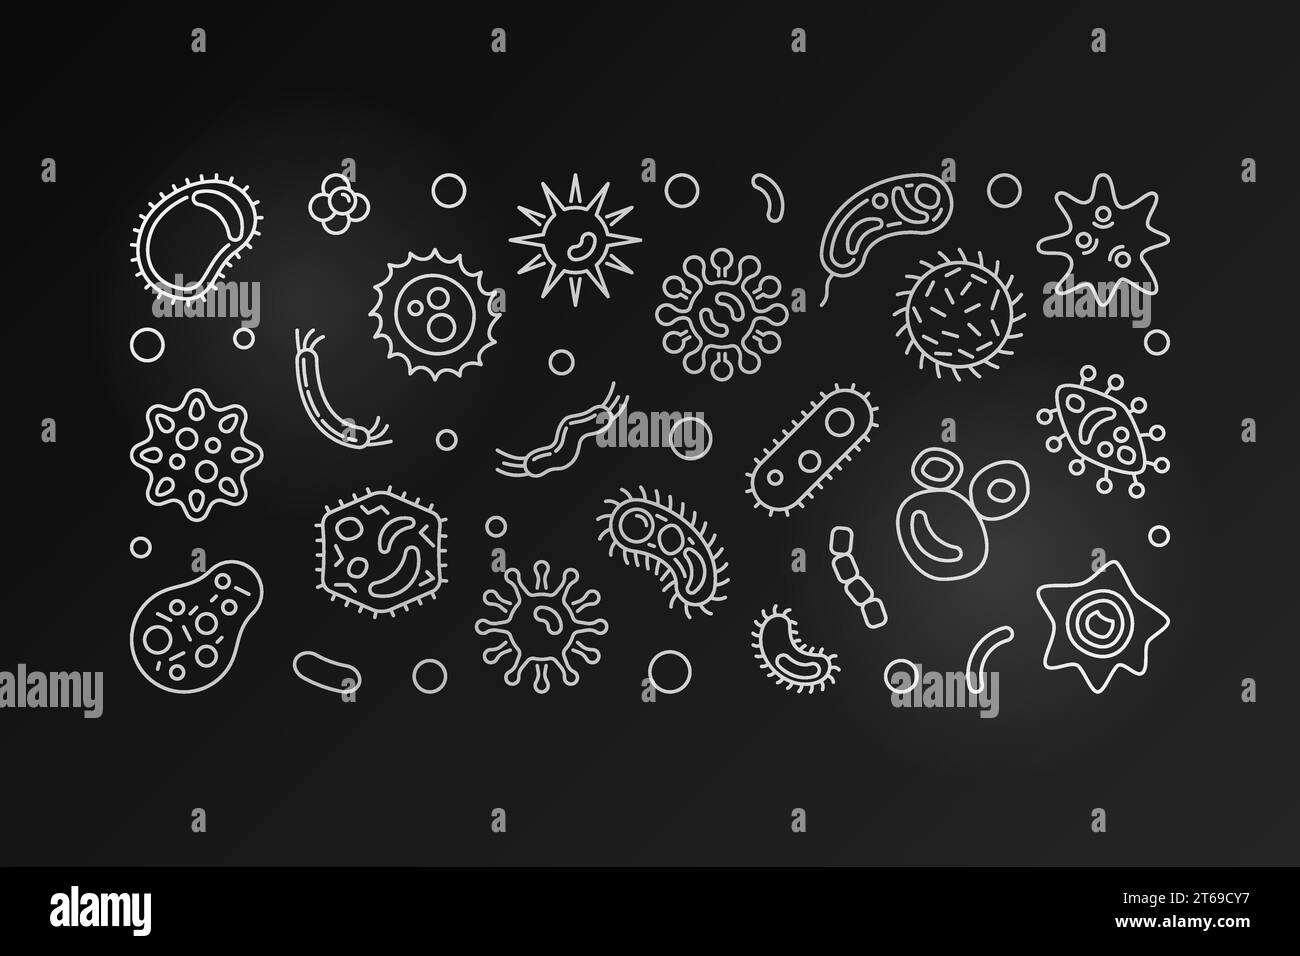 Cellules bactériennes bannière horizontale foncée. Illustration argentée de contour de vecteur faite avec des microbes et des icônes de bactérie Illustration de Vecteur